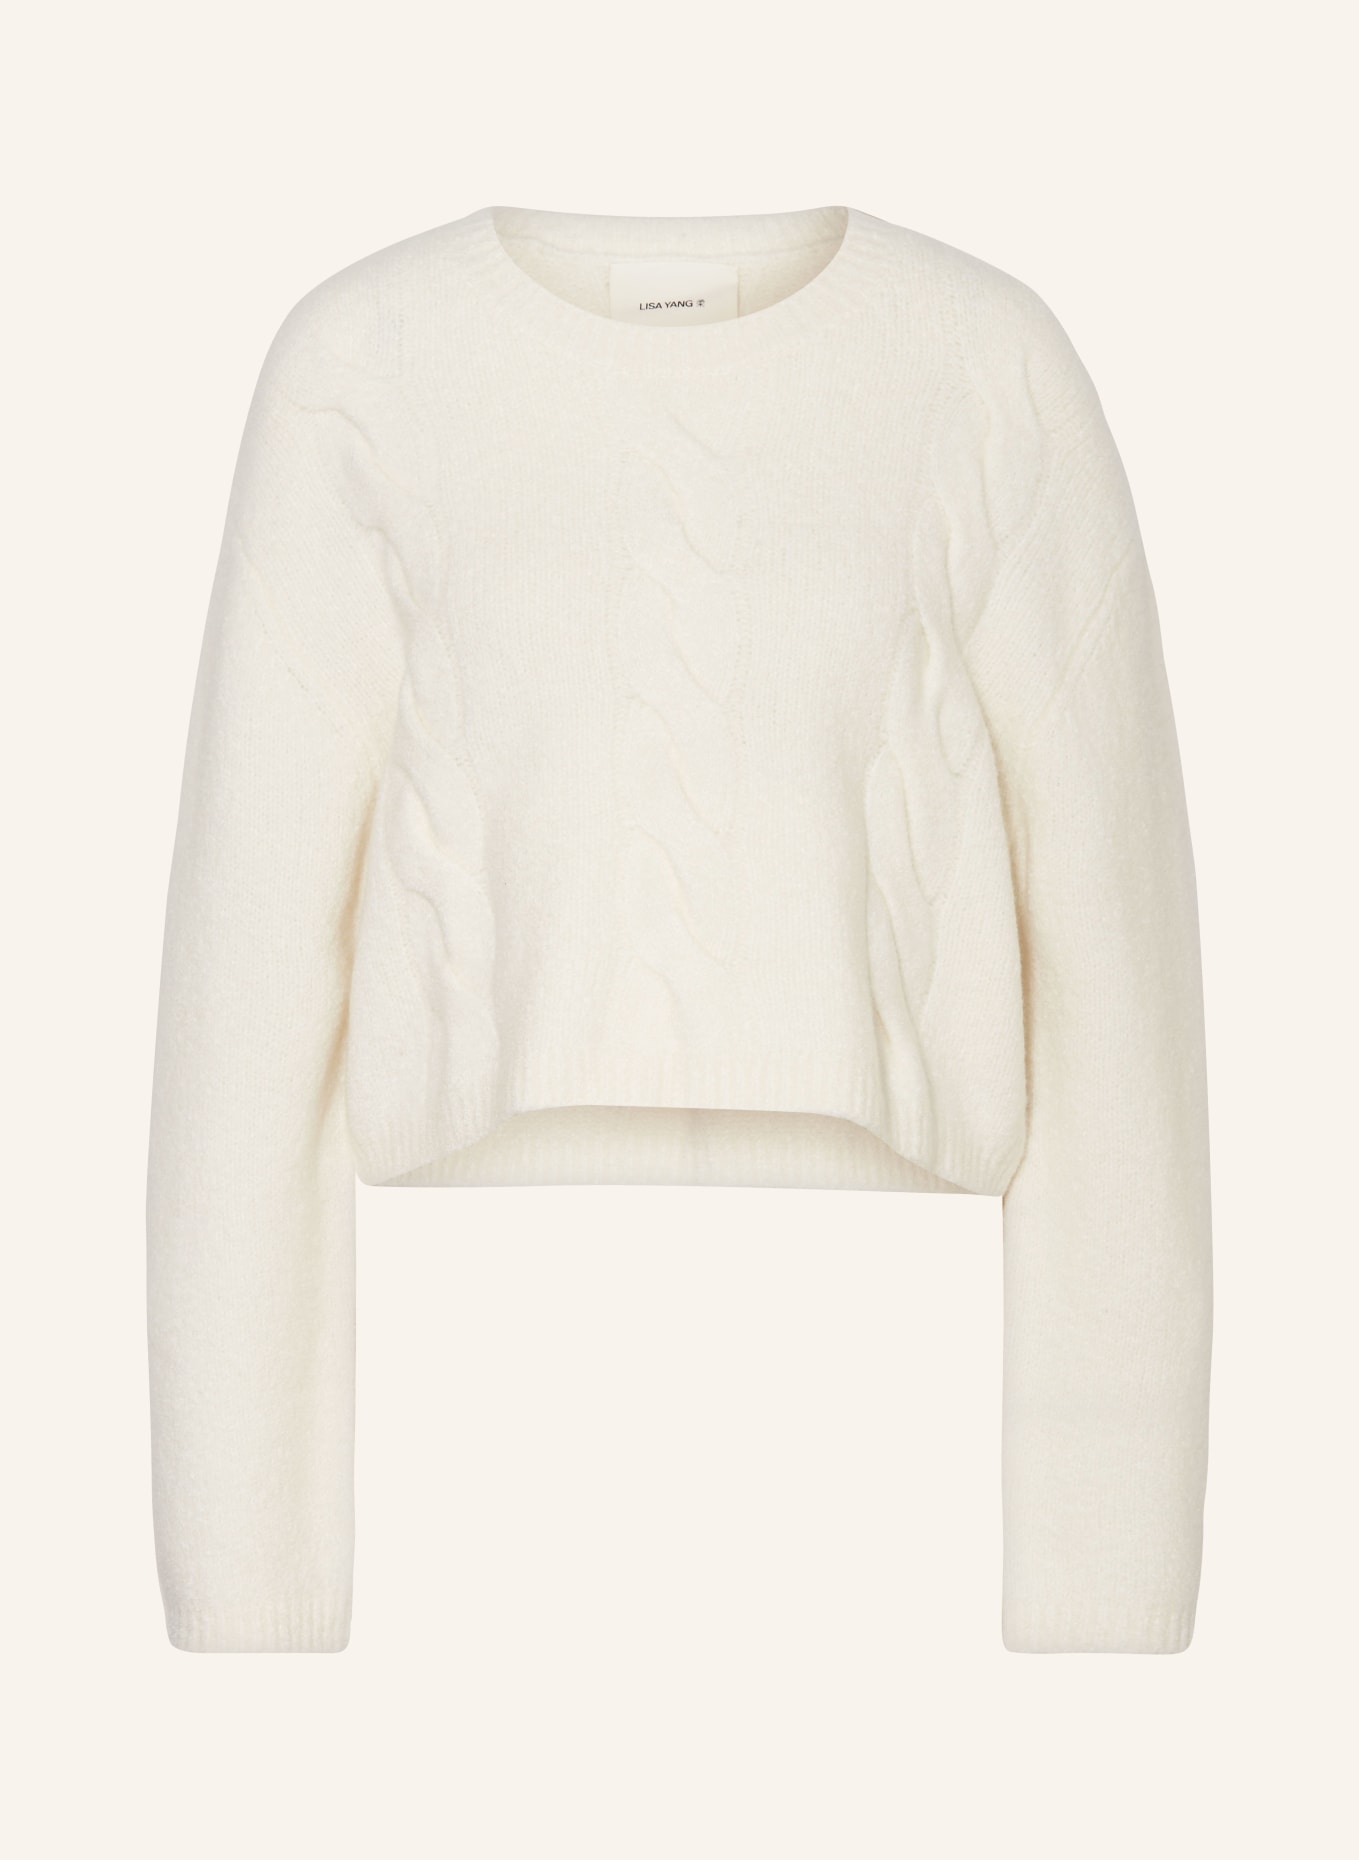 LISA YANG Cashmere-Pullover, Farbe: CREME (Bild 1)